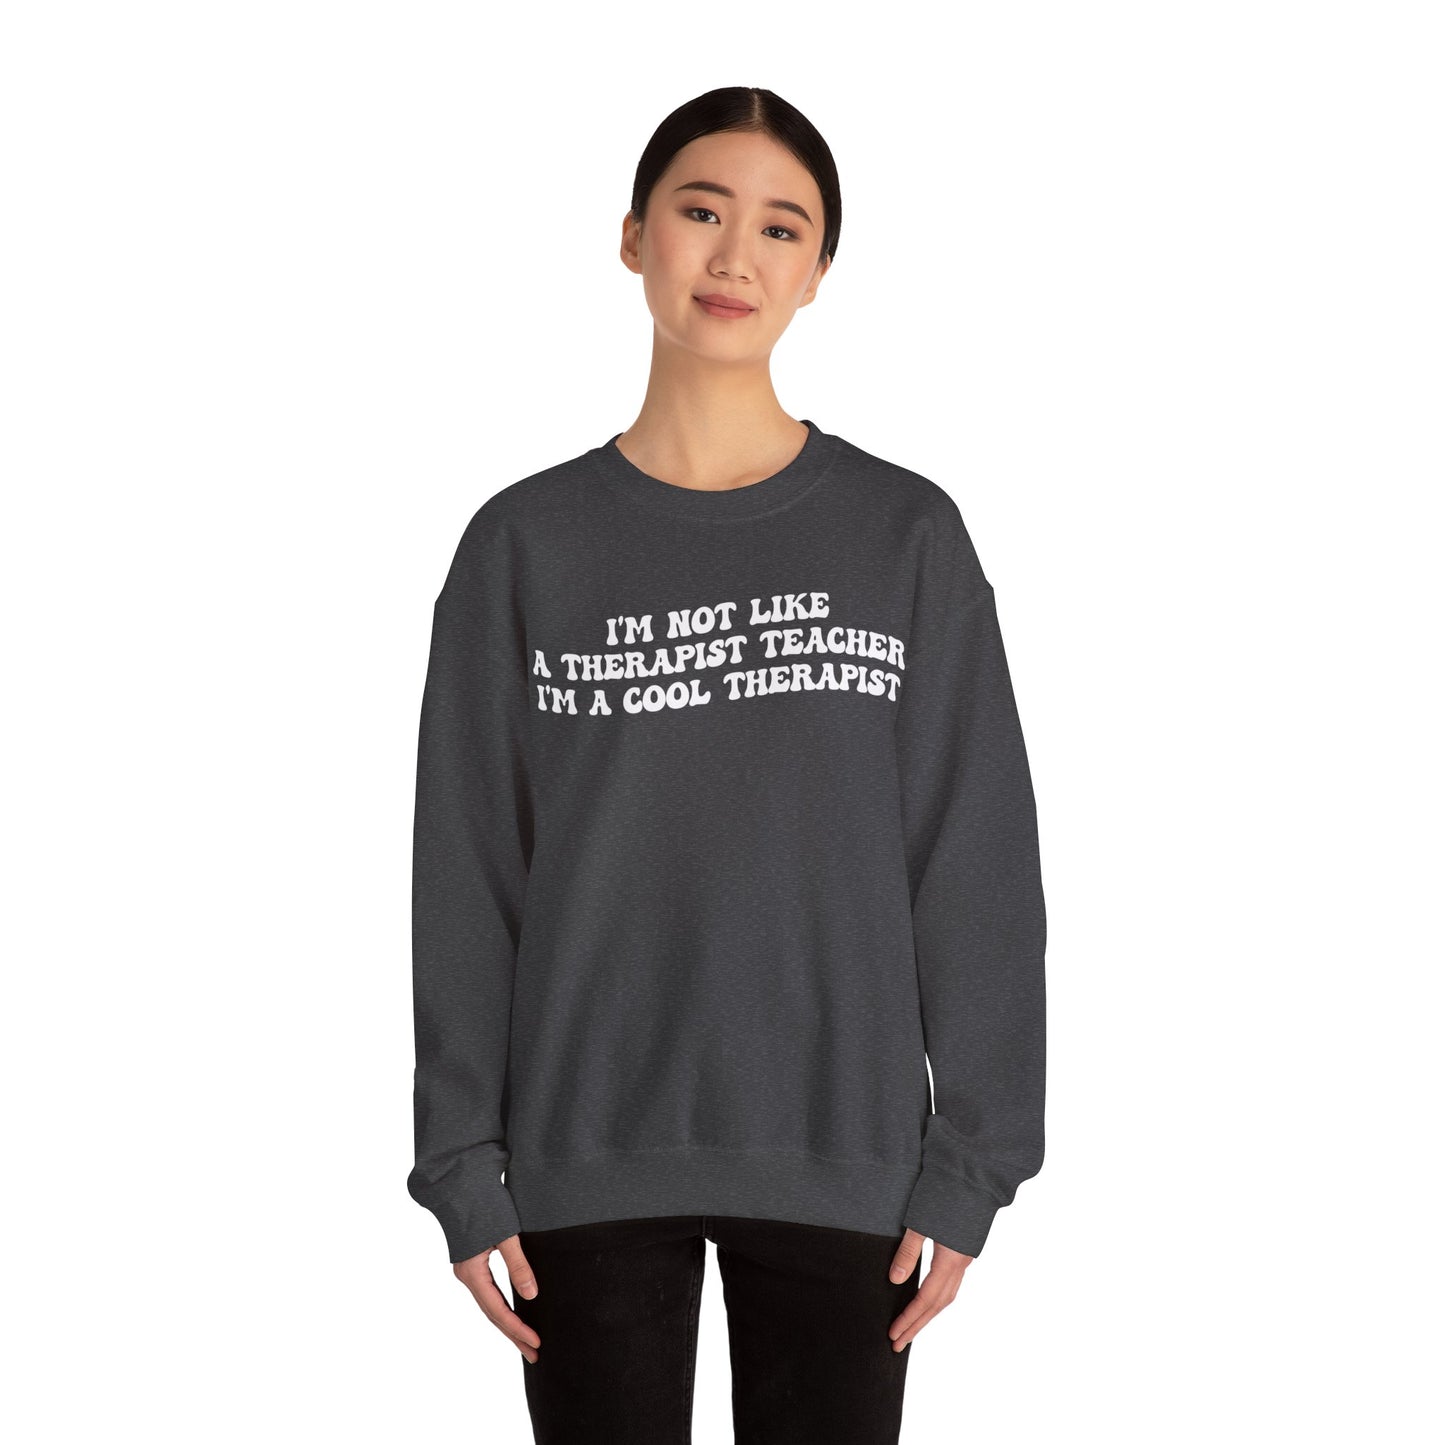 I'm Not Like A Therapist Teacher I'm A Cool Therapist Sweatshirt, Cool Therapist Appreciation Sweatshirt, Sweatshirt for Therapist, S1554